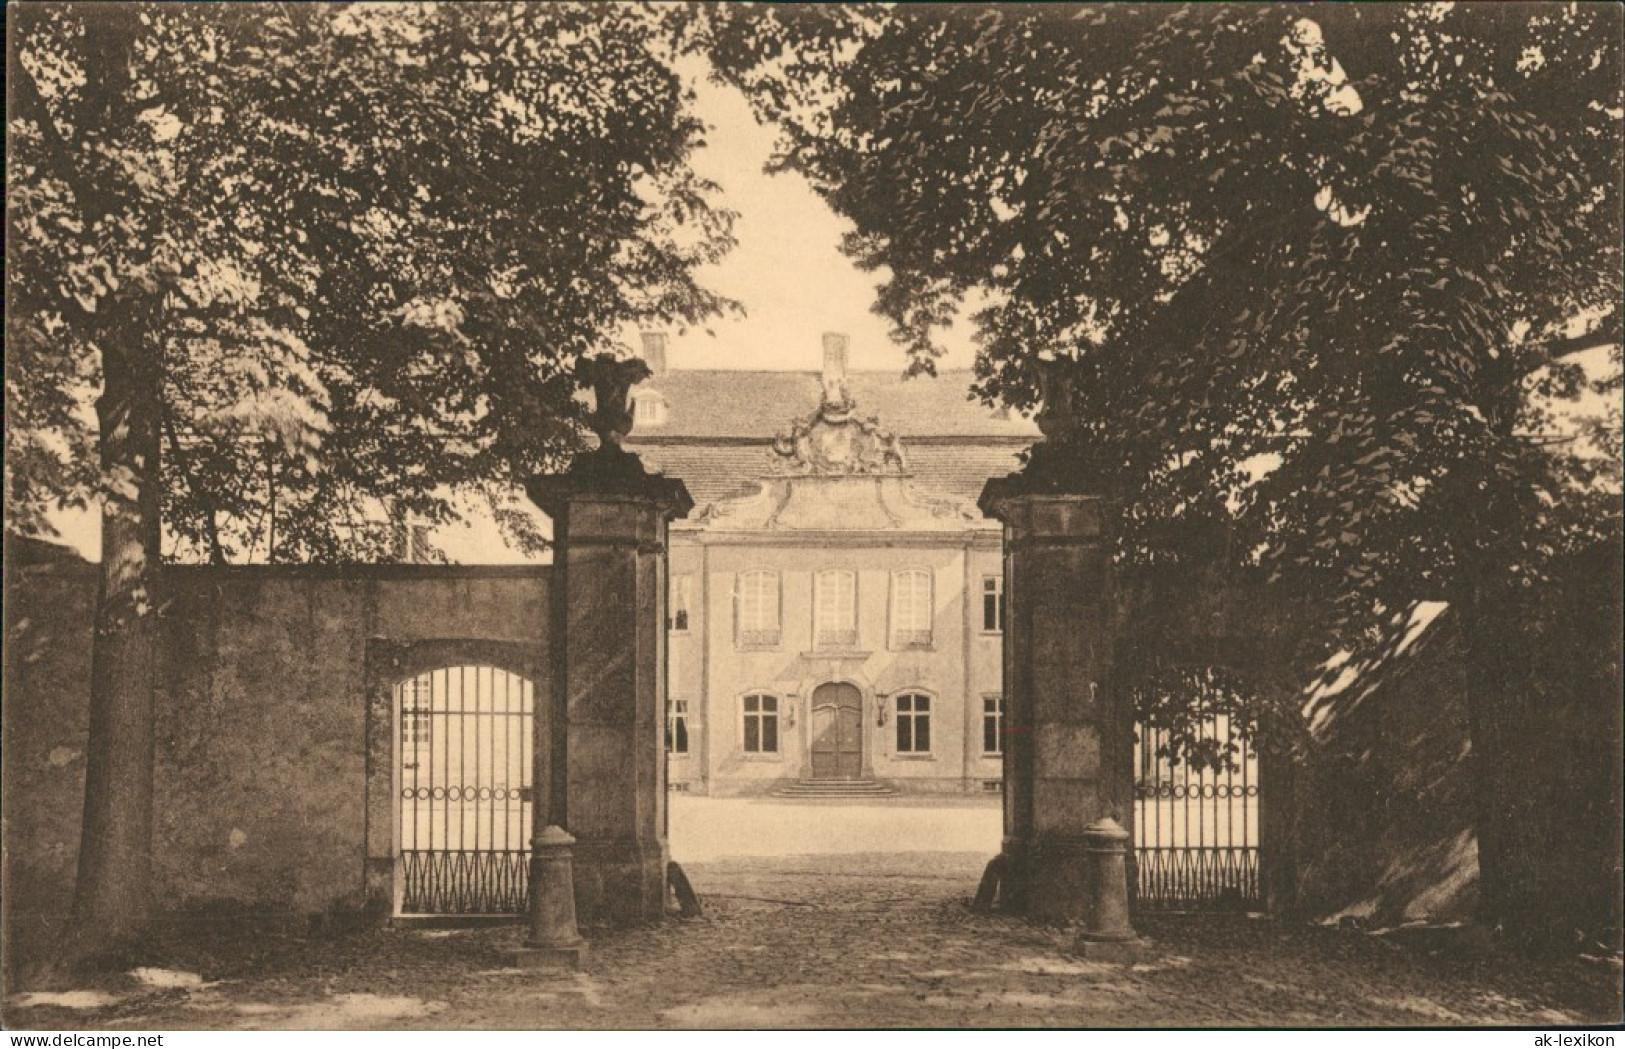 Ansichtskarte Dahlen Schloss - Portal 1926 - Dahlen